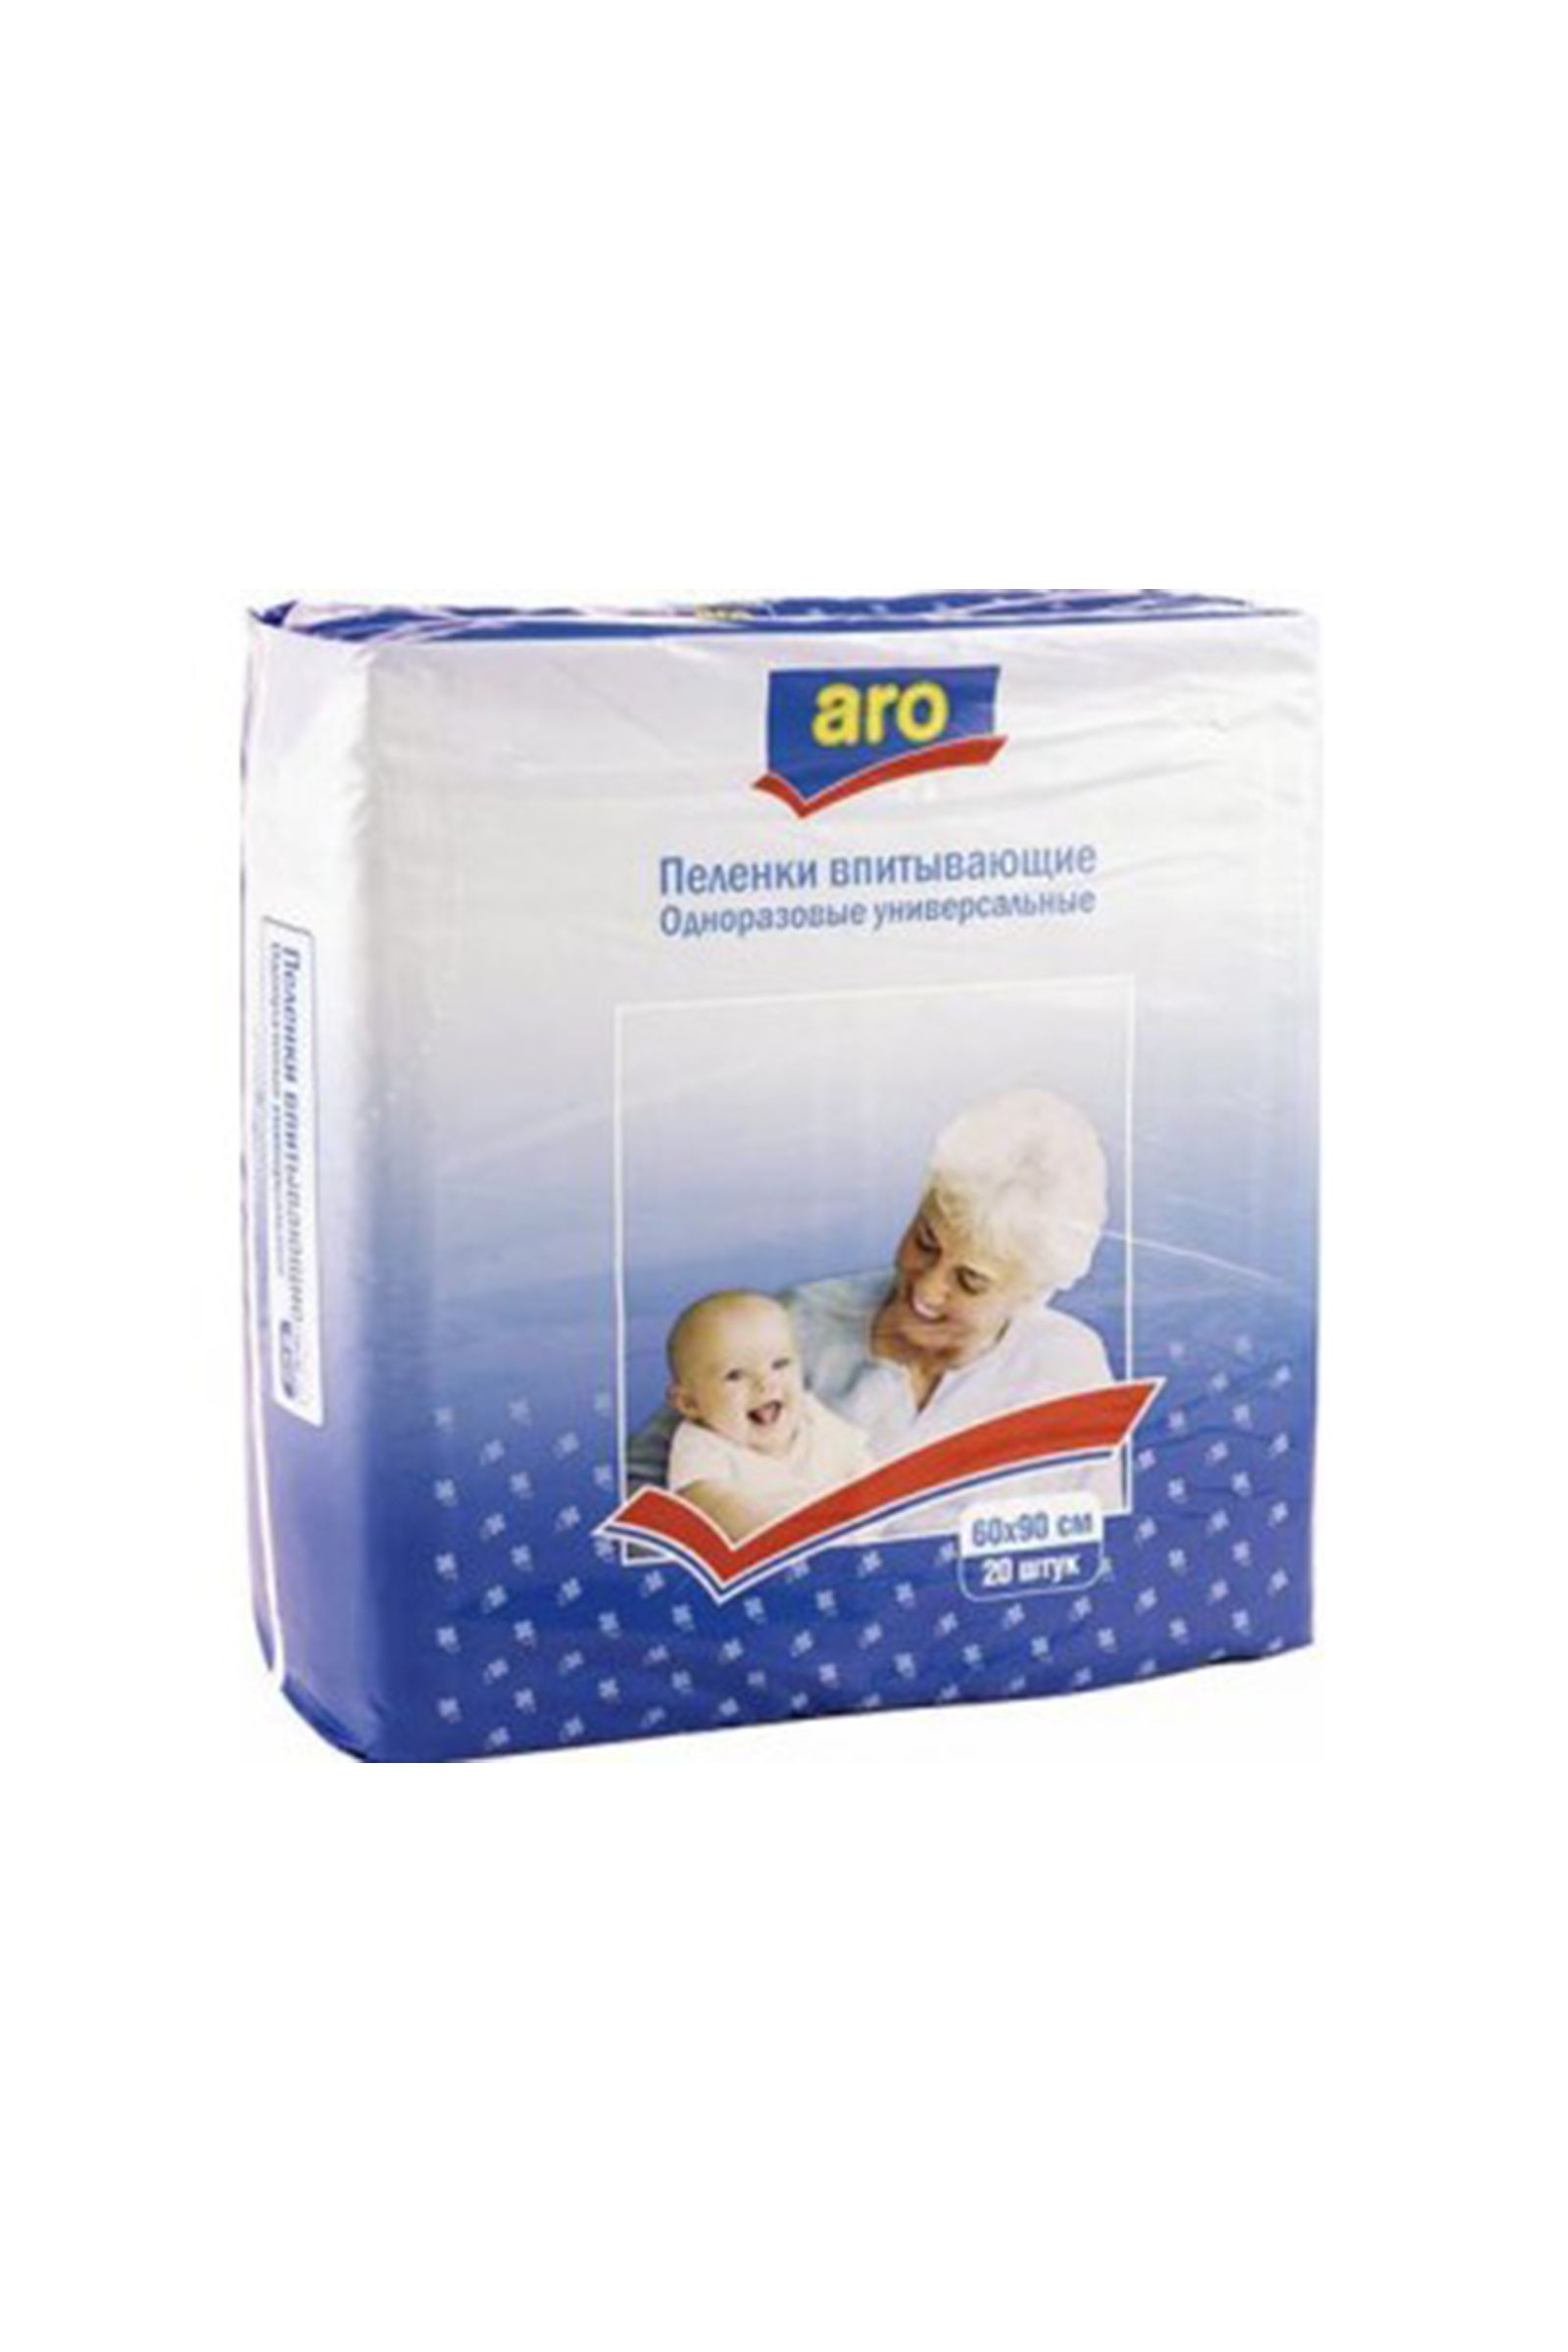 Пеленки детские ARO 60*90-5-004 оптом от производителя детской одежды 'Алёна'